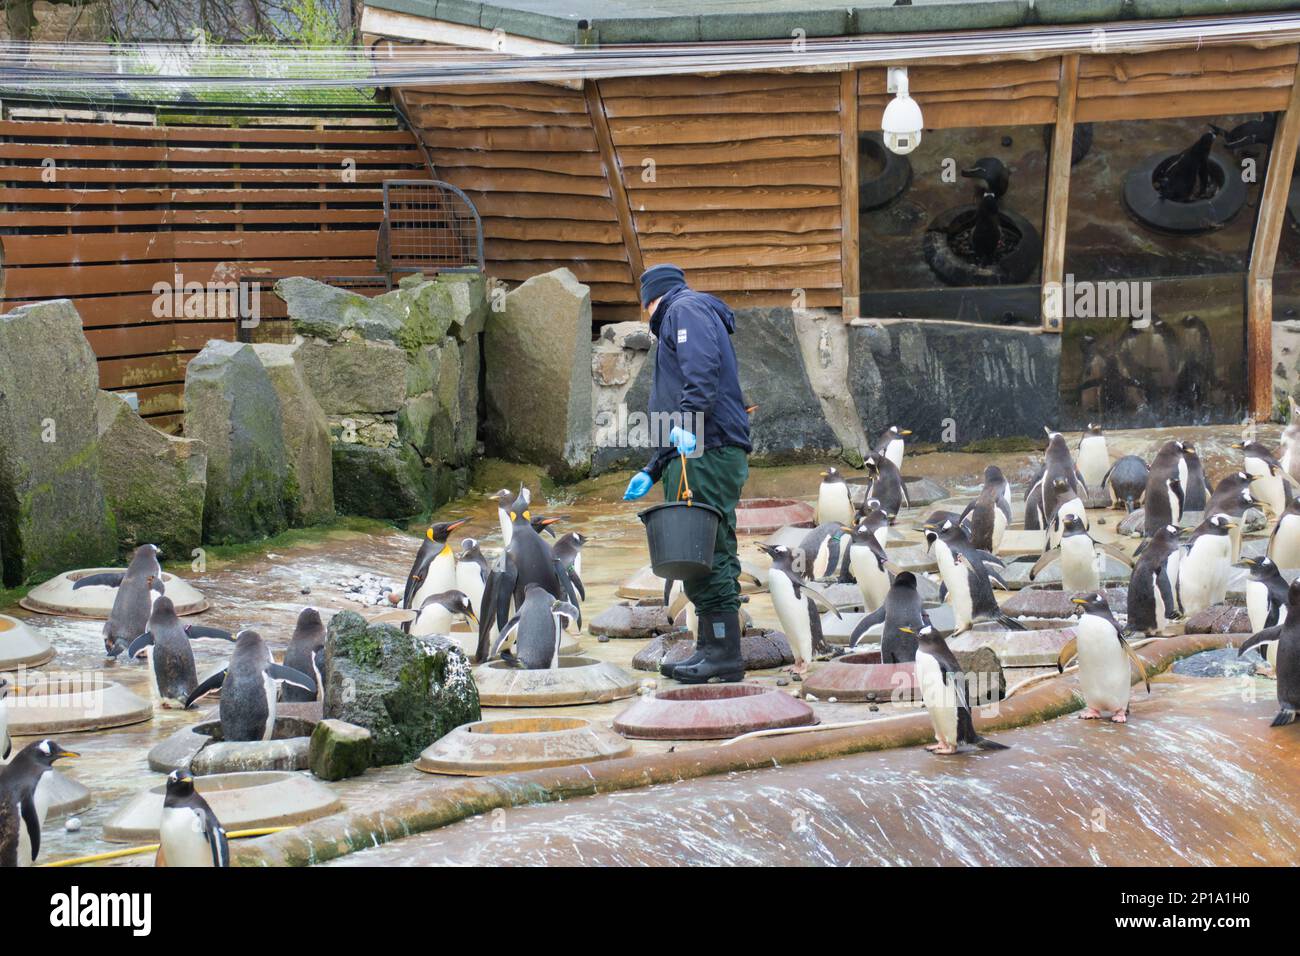 Gentoo e re Pinguini cantano sotto la pioggia. Il secondo giorno di primavera ha visto la pioggia come lo zoo e i suoi animali hanno fatto del meglio Foto Stock